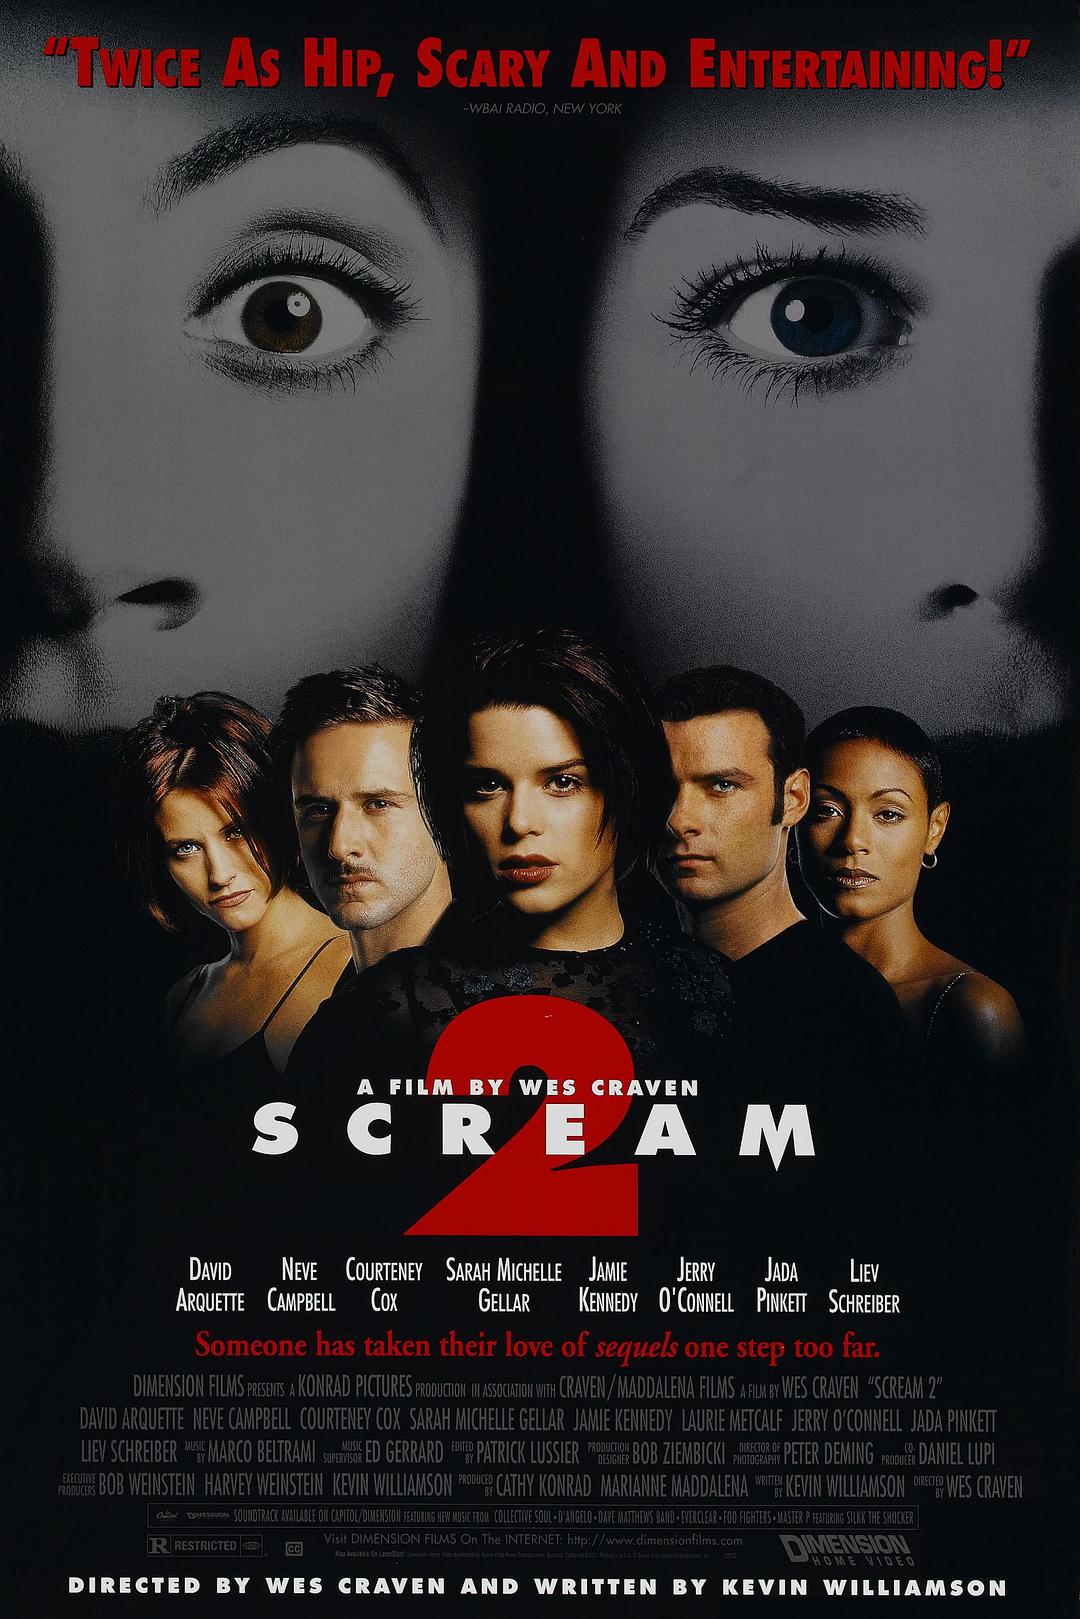 惊声尖叫2.Scream 2 1997 BluRay 1080p DTS AC3 x264-MgB 8.09GB